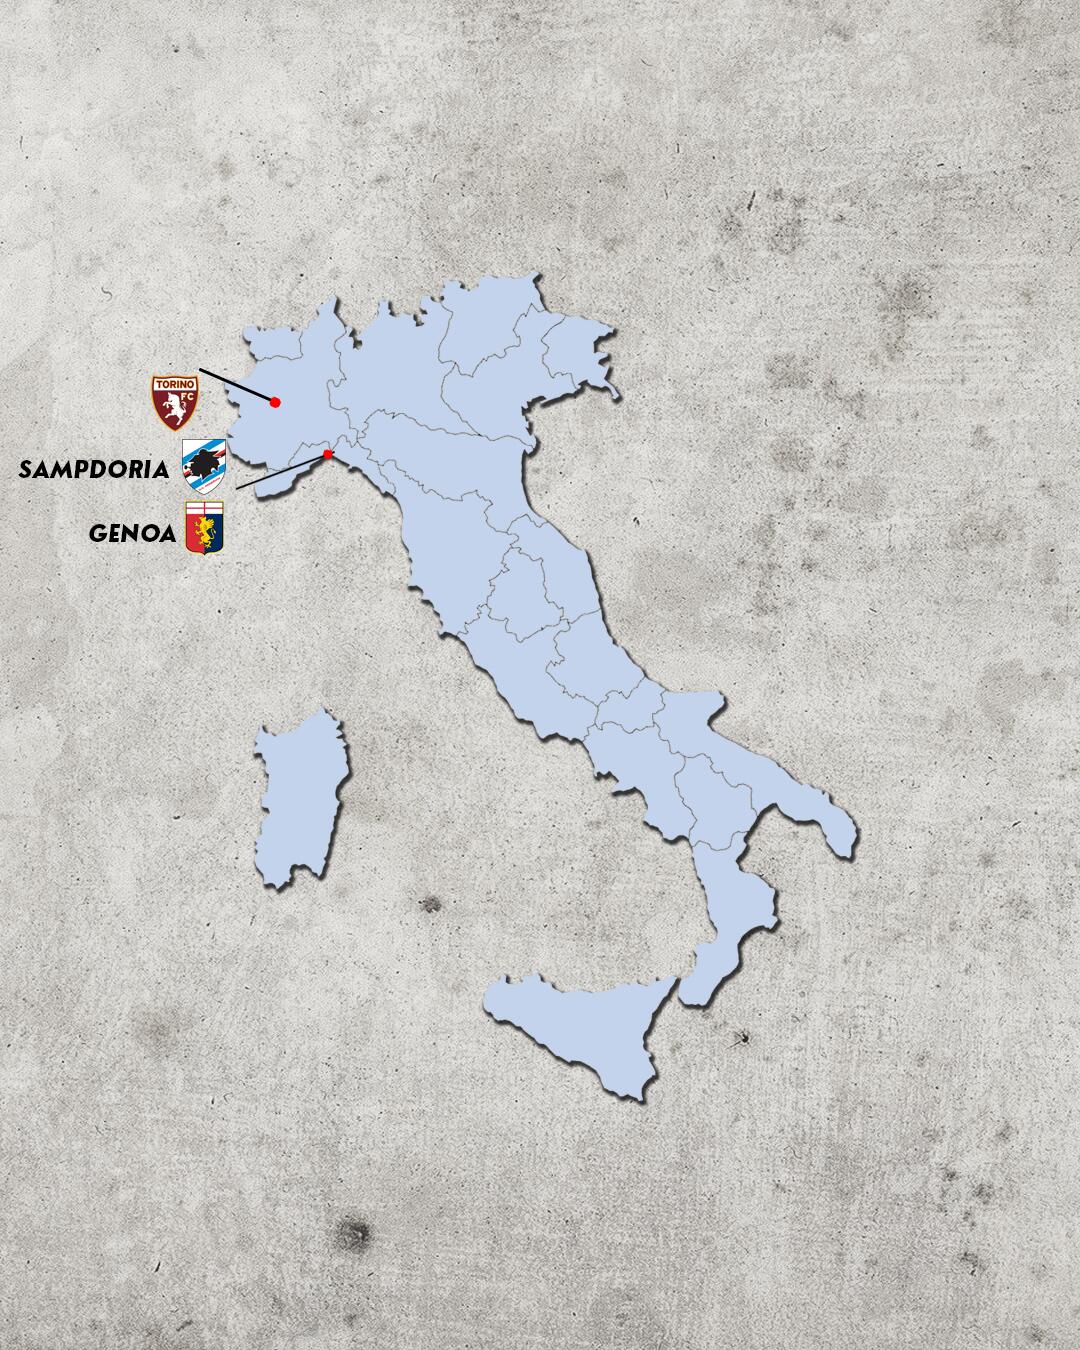 rivalidades do campeonato italiano - rivais da sampdoria